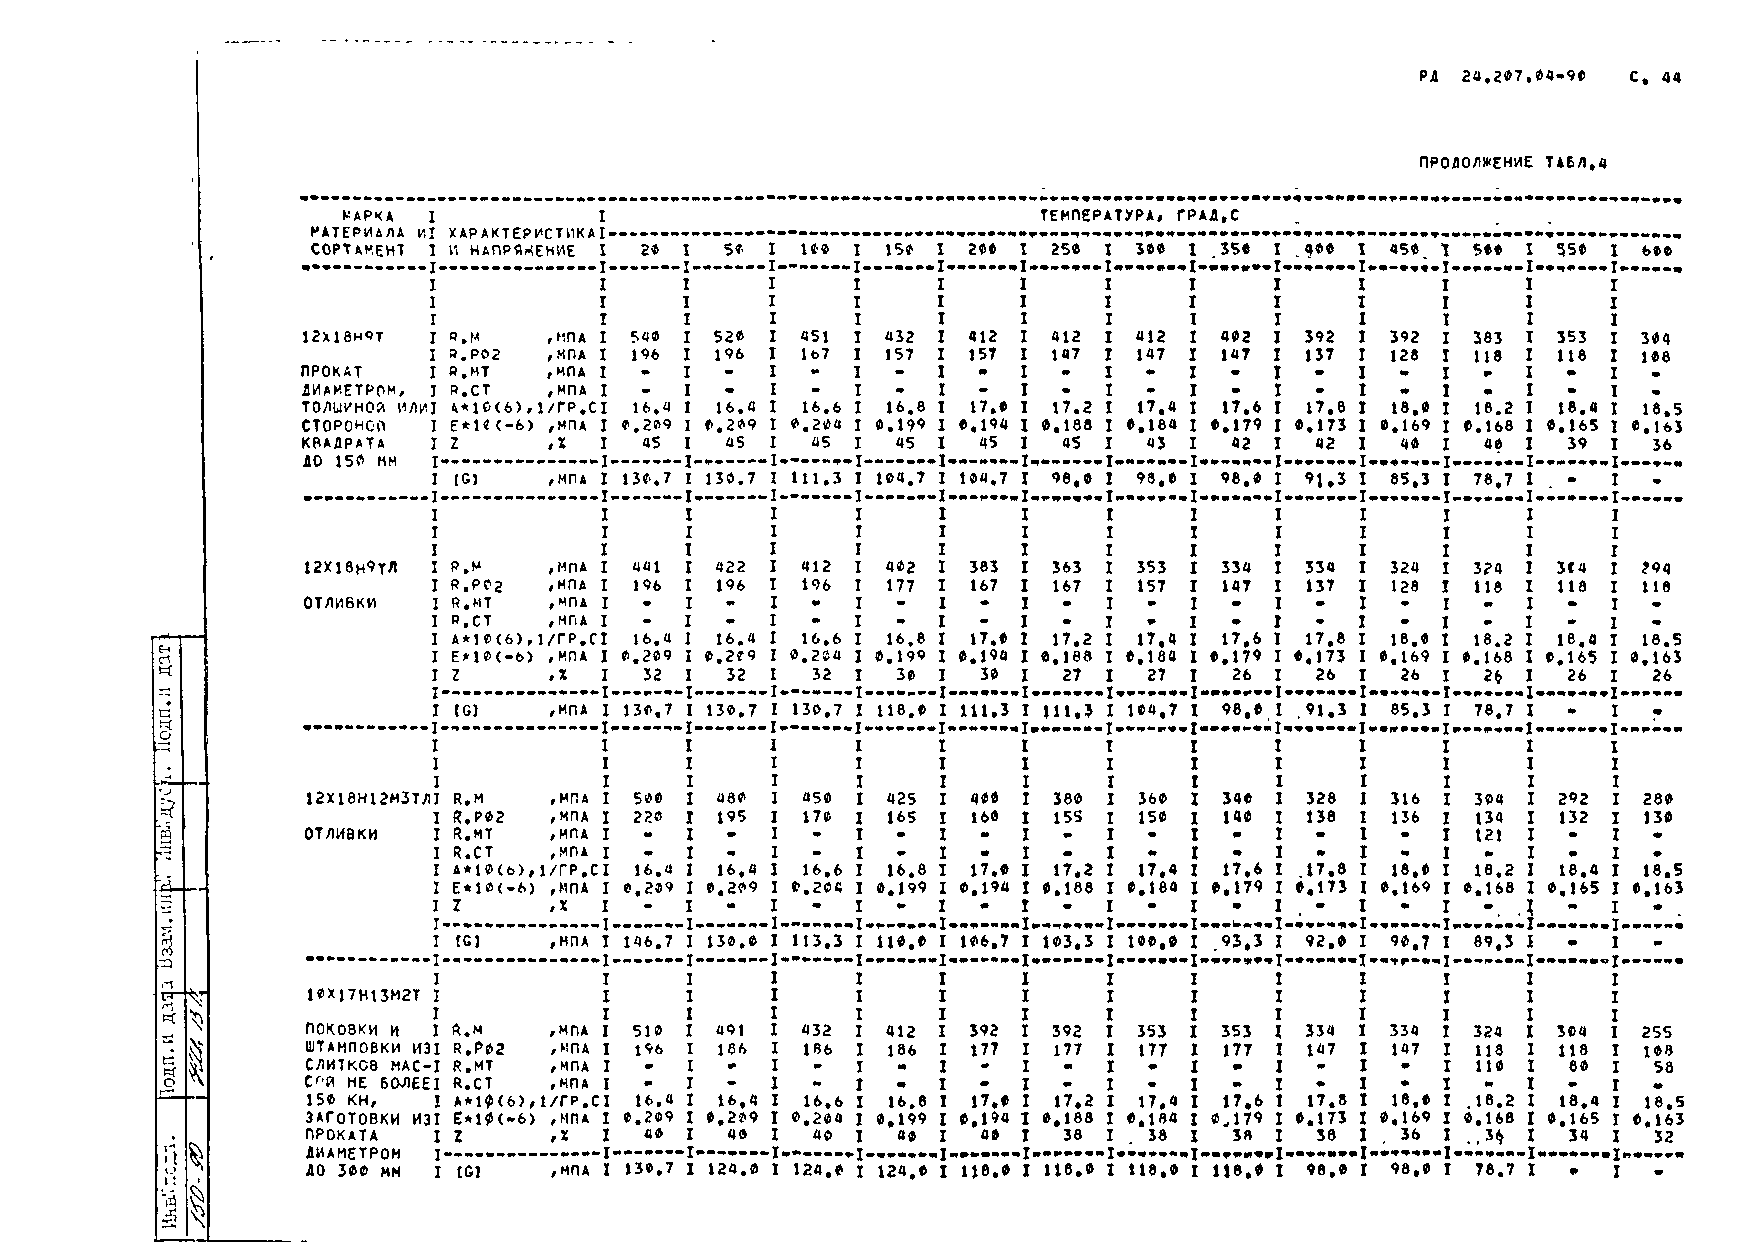 РД 24.207.04-90